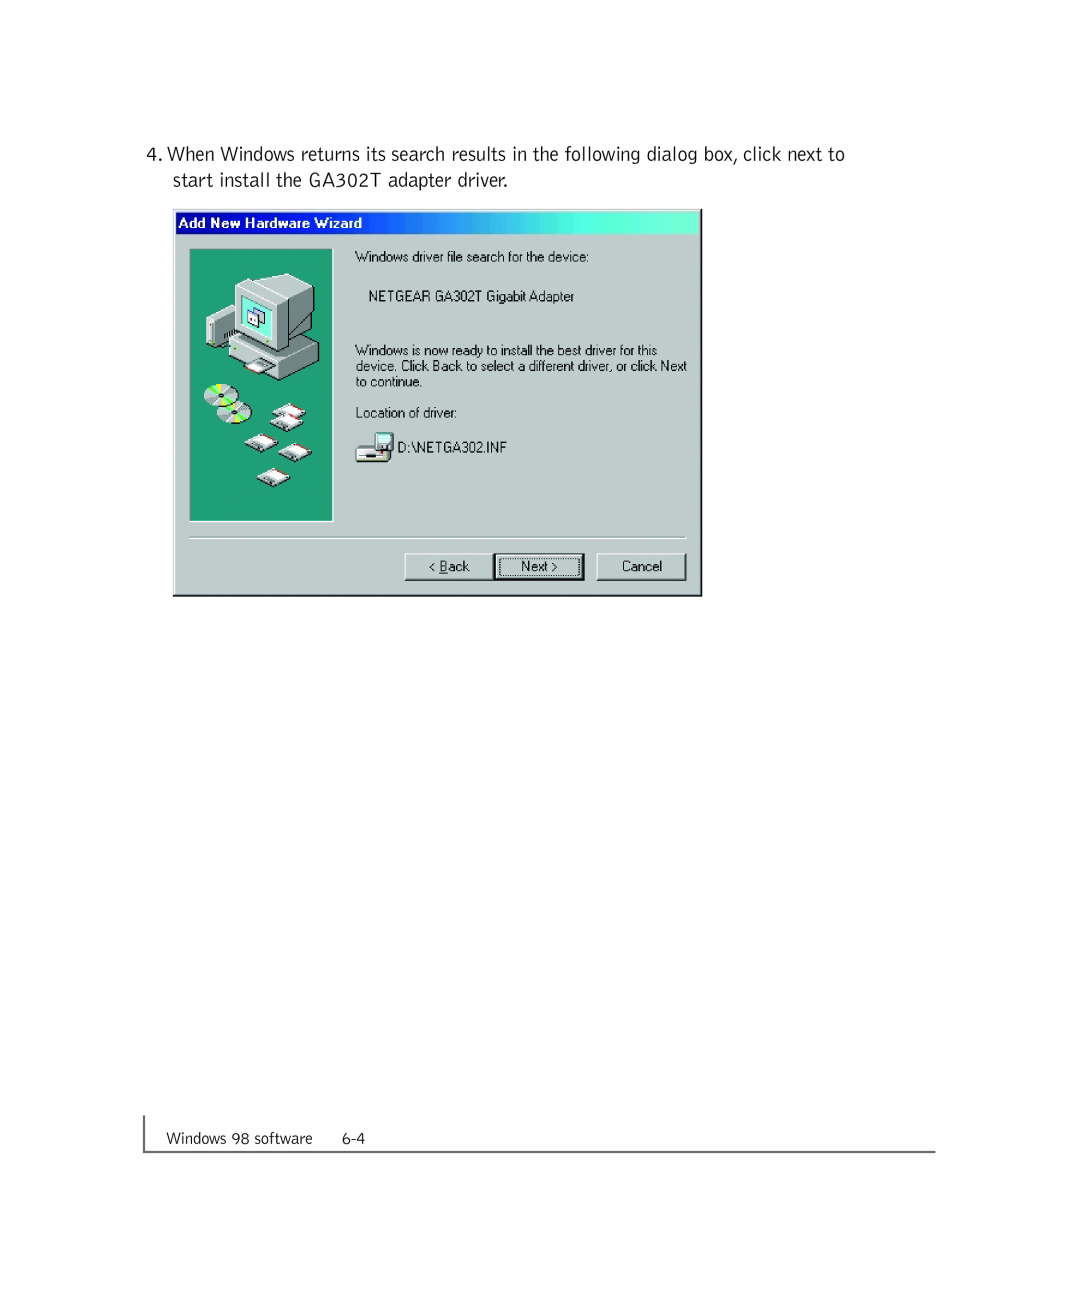 NETGEAR manual start install the GA302T adapter driver, Windows 98 software 